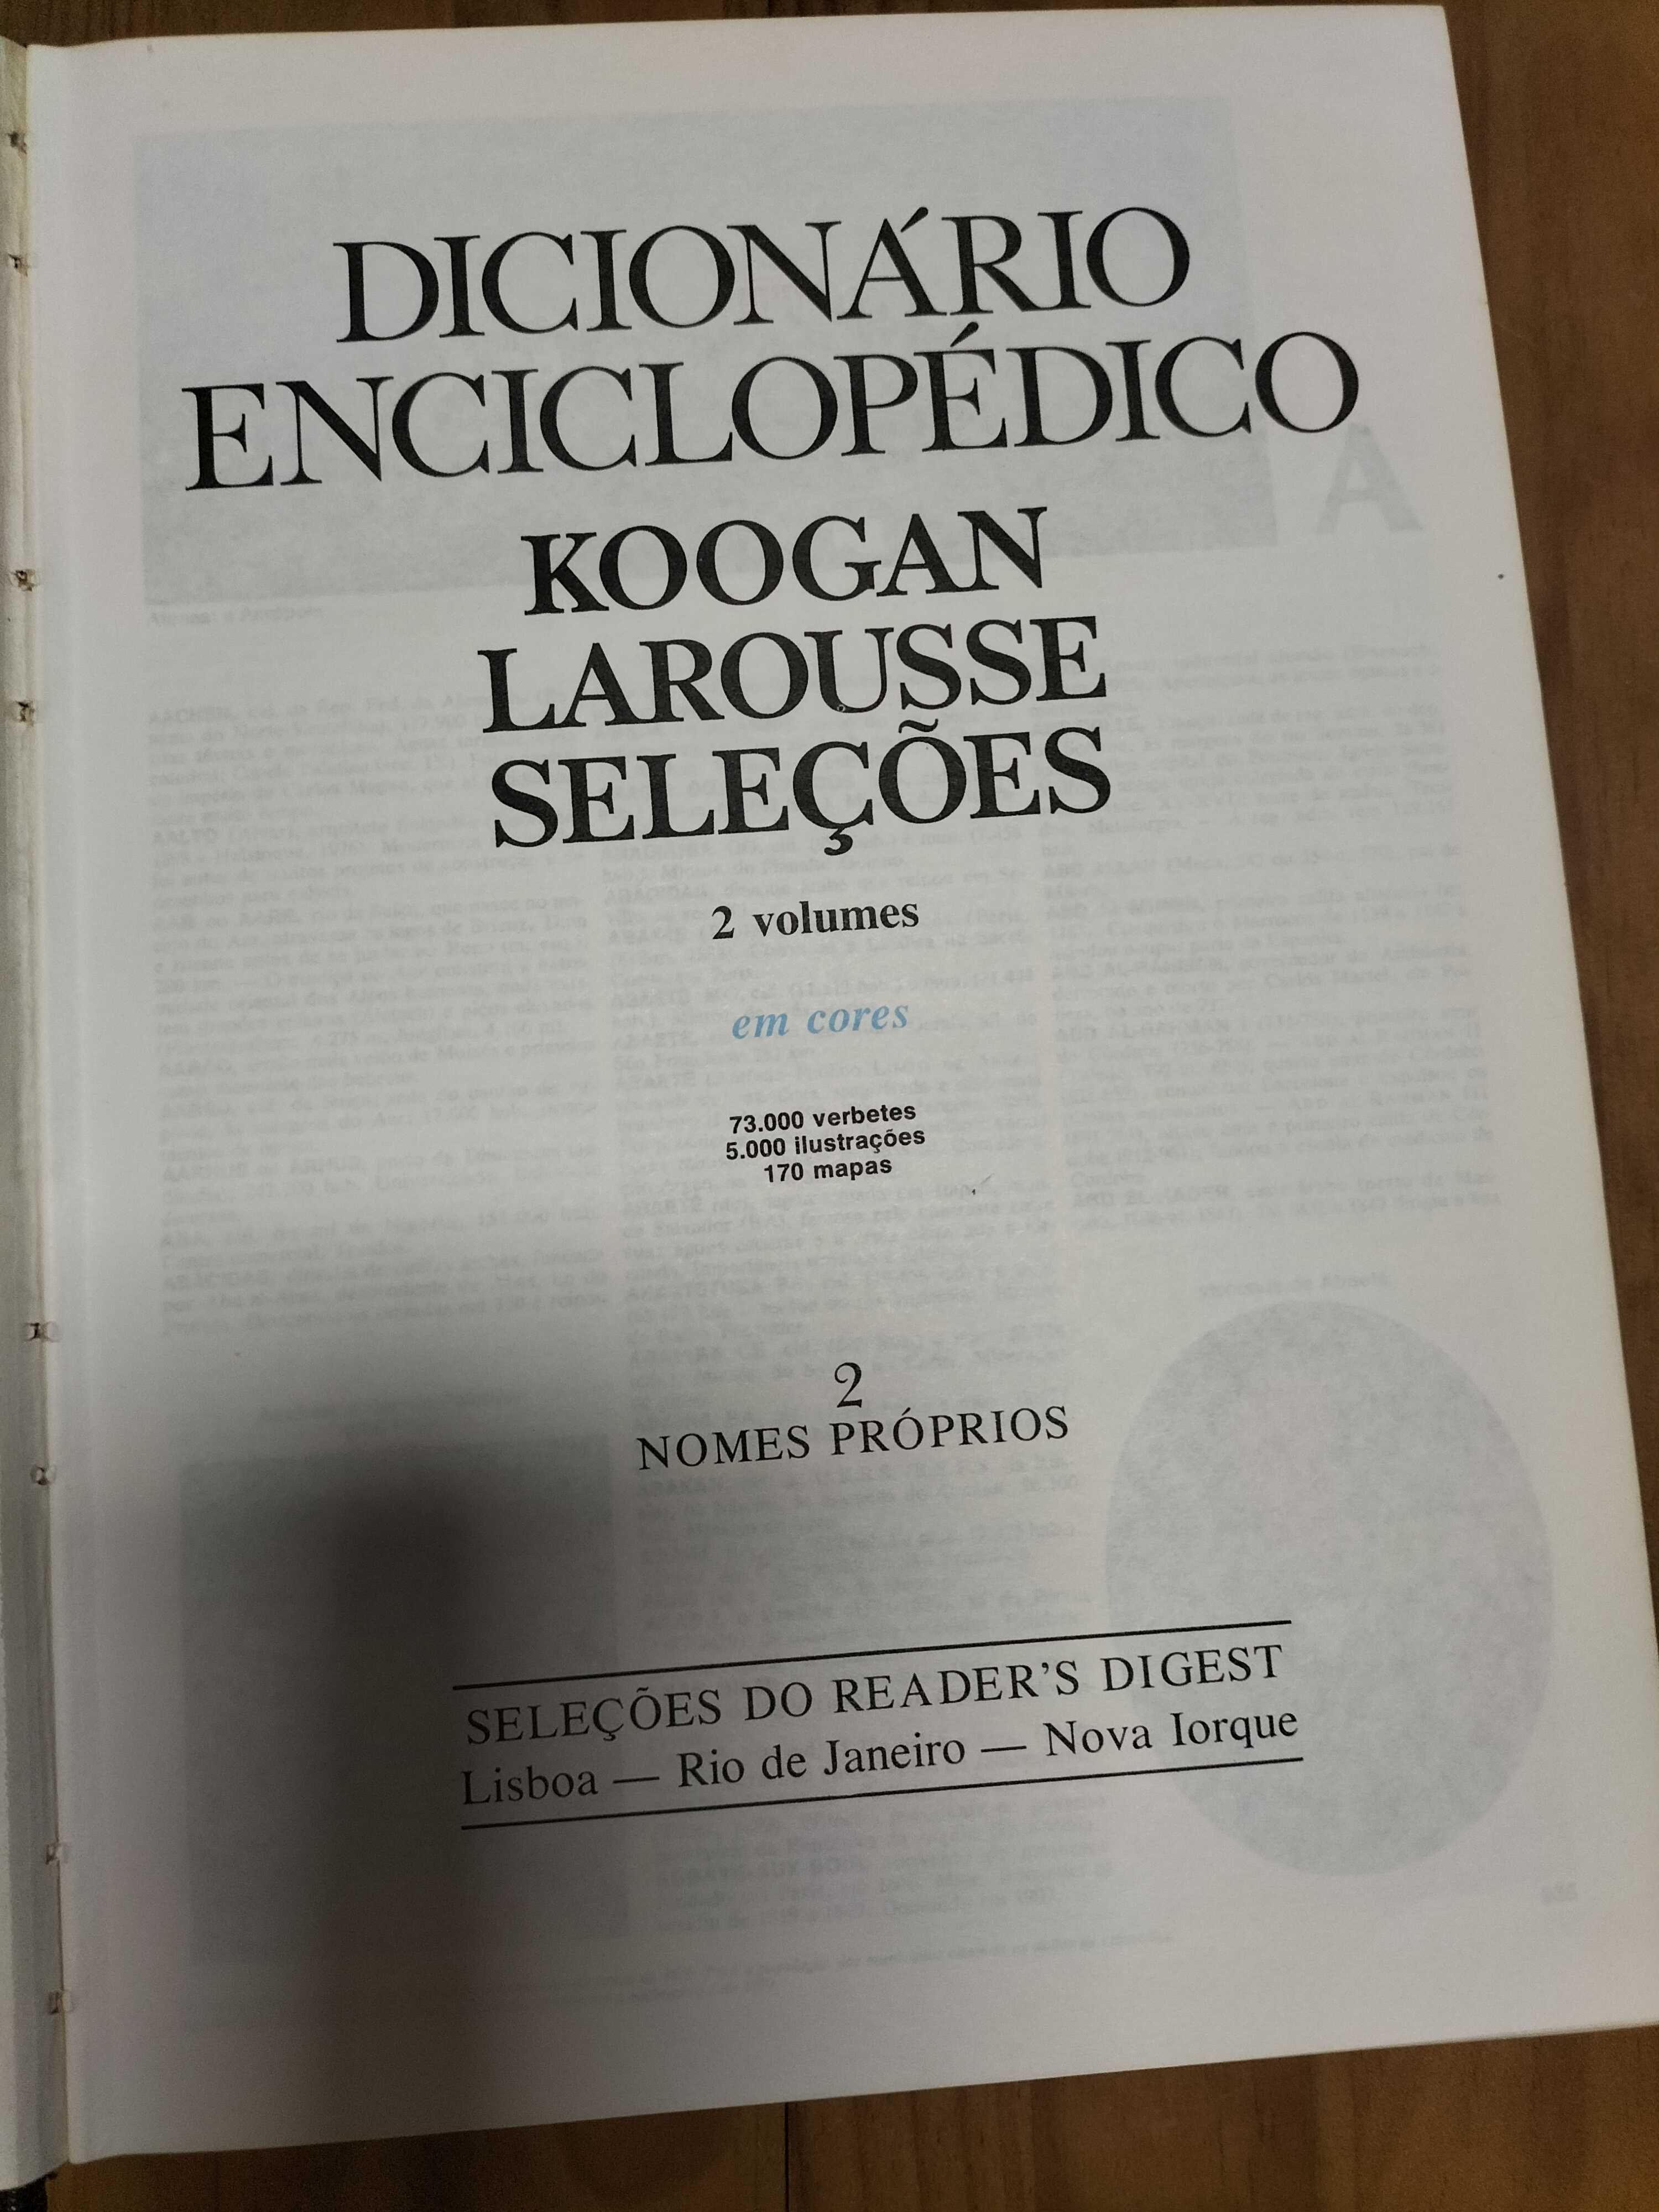 Dicionário enciclopédico Koogan Larousse Seleçoes